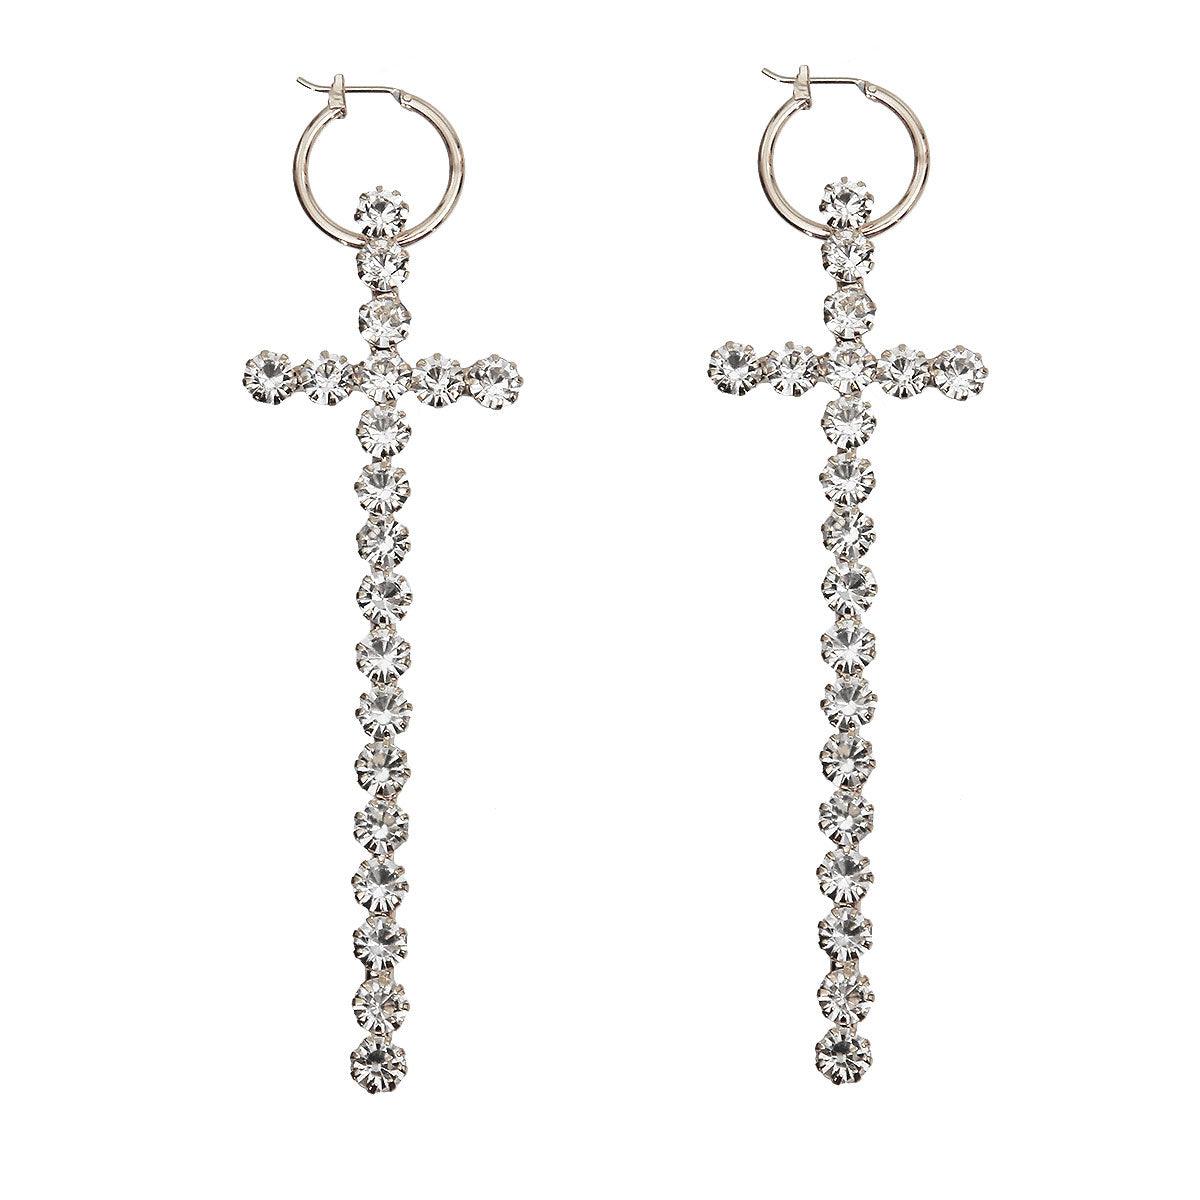 Silver-tone Embellished Rhinestone Cross Drop Earrings